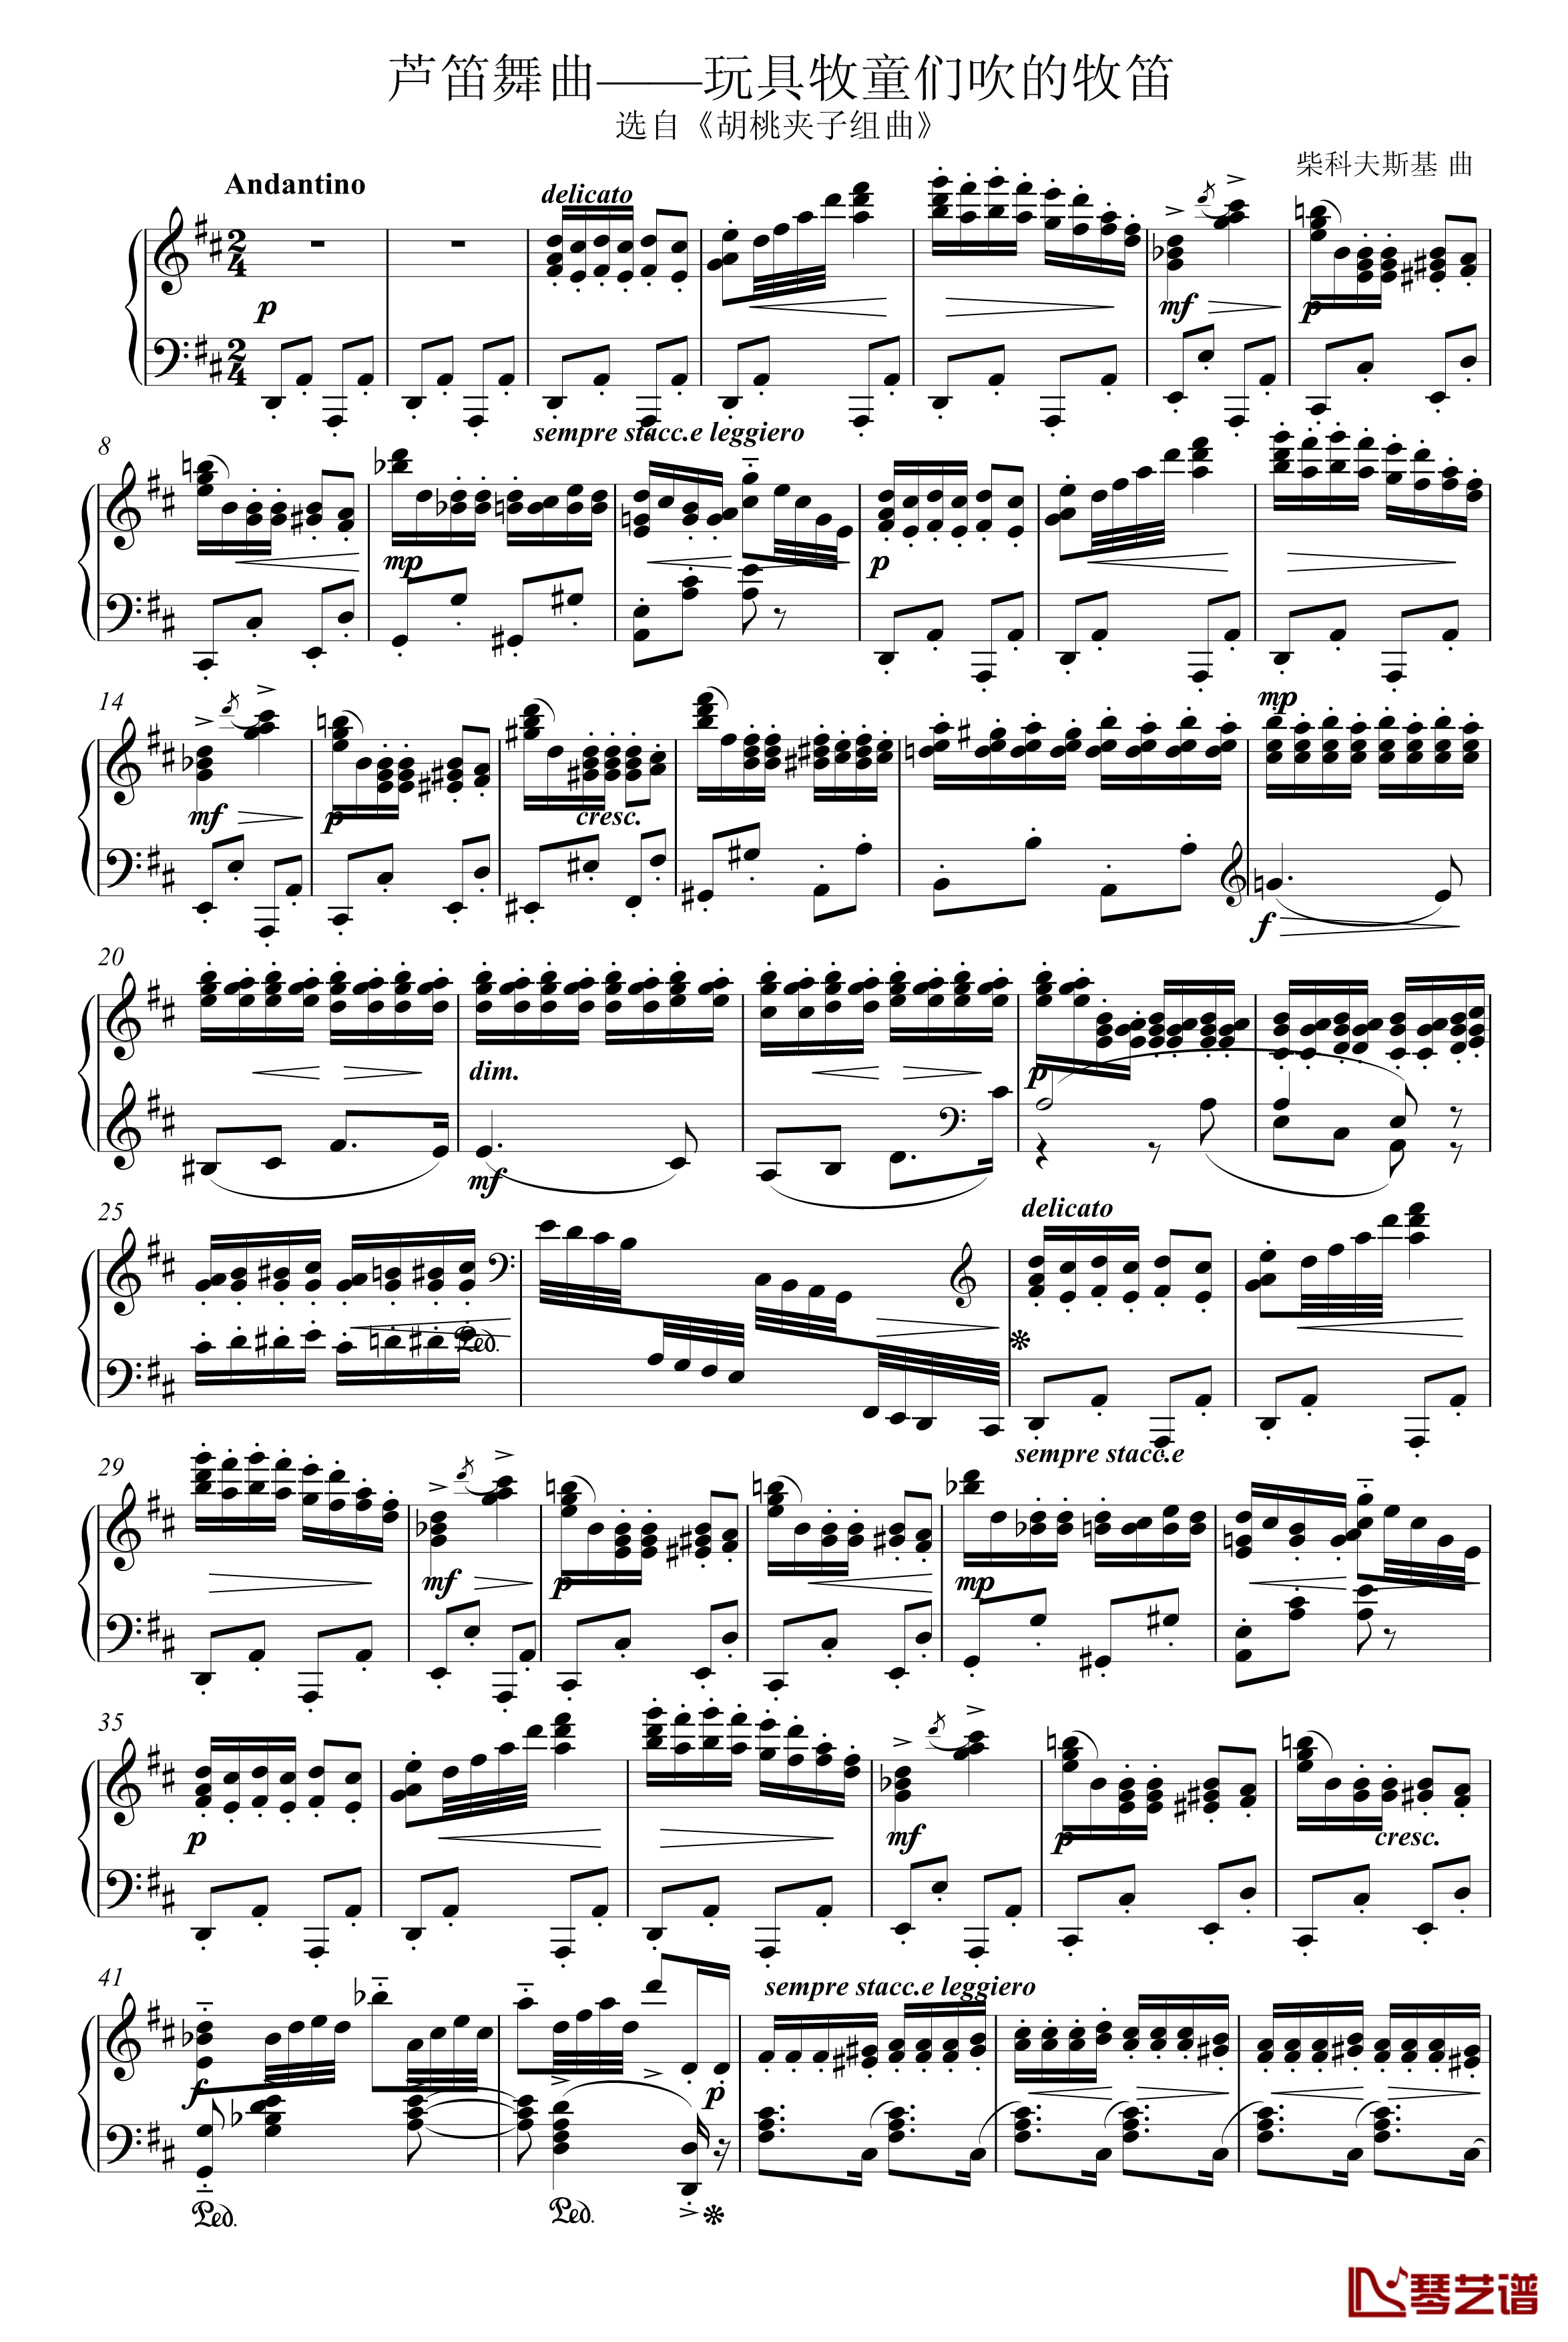 芦笛舞曲钢琴谱-柴科夫斯基-Peter Ilyich Tchaikovsky1